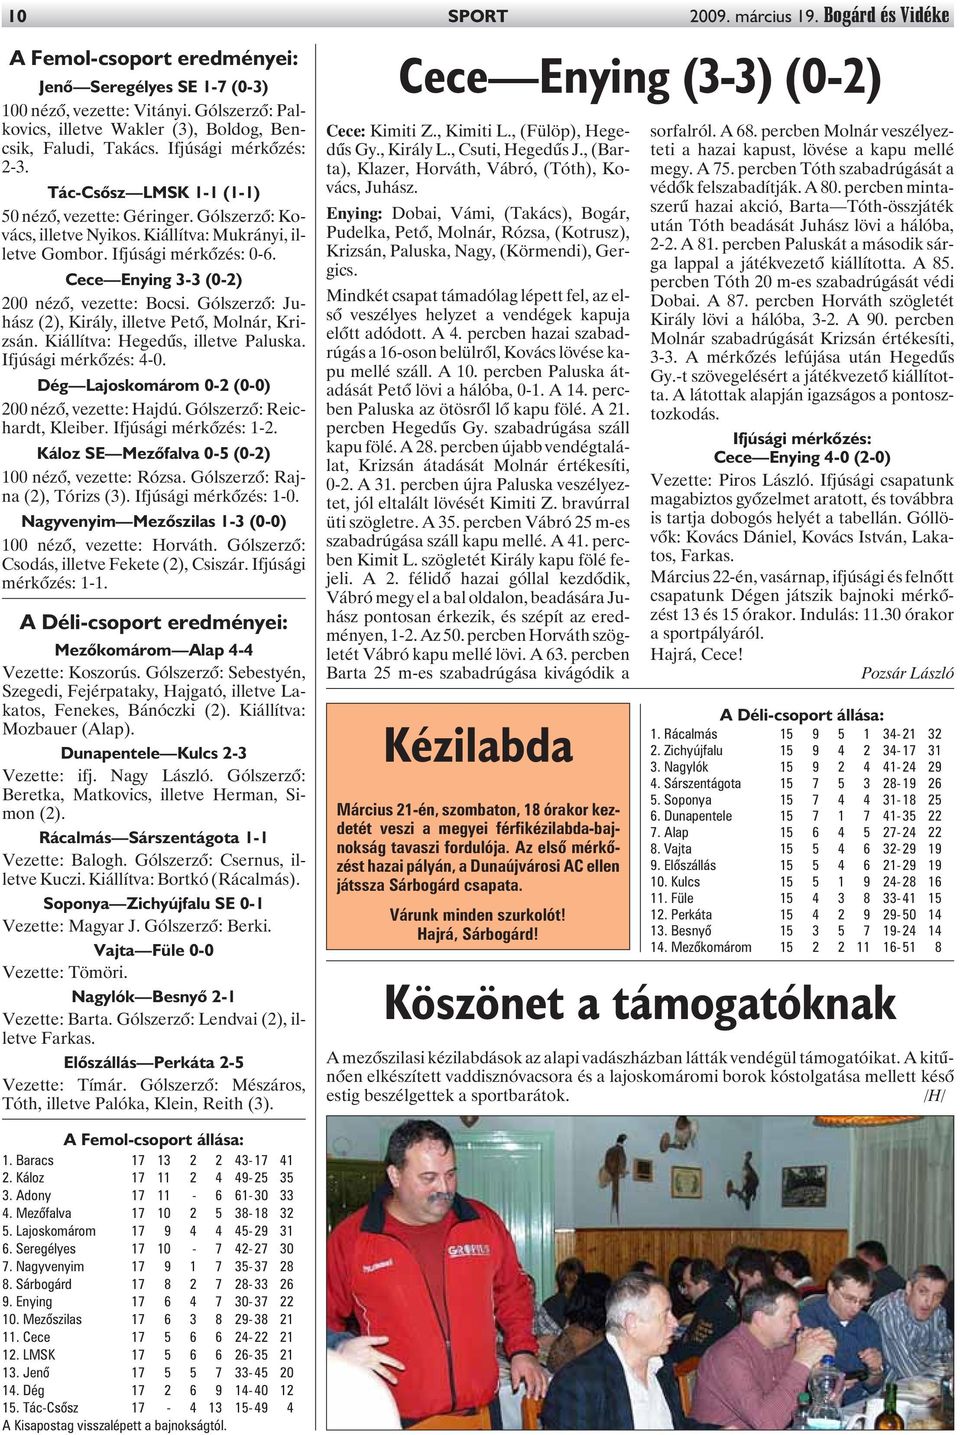 Kiállítva: Mukrányi, illetve Gombor. Ifjúsági mérkõzés: 0-6. Cece Enying 3-3 (0-2) 200 nézõ, vezette: Bocsi. Gólszerzõ: Juhász (2), Király, illetve Petõ, Molnár, Krizsán.